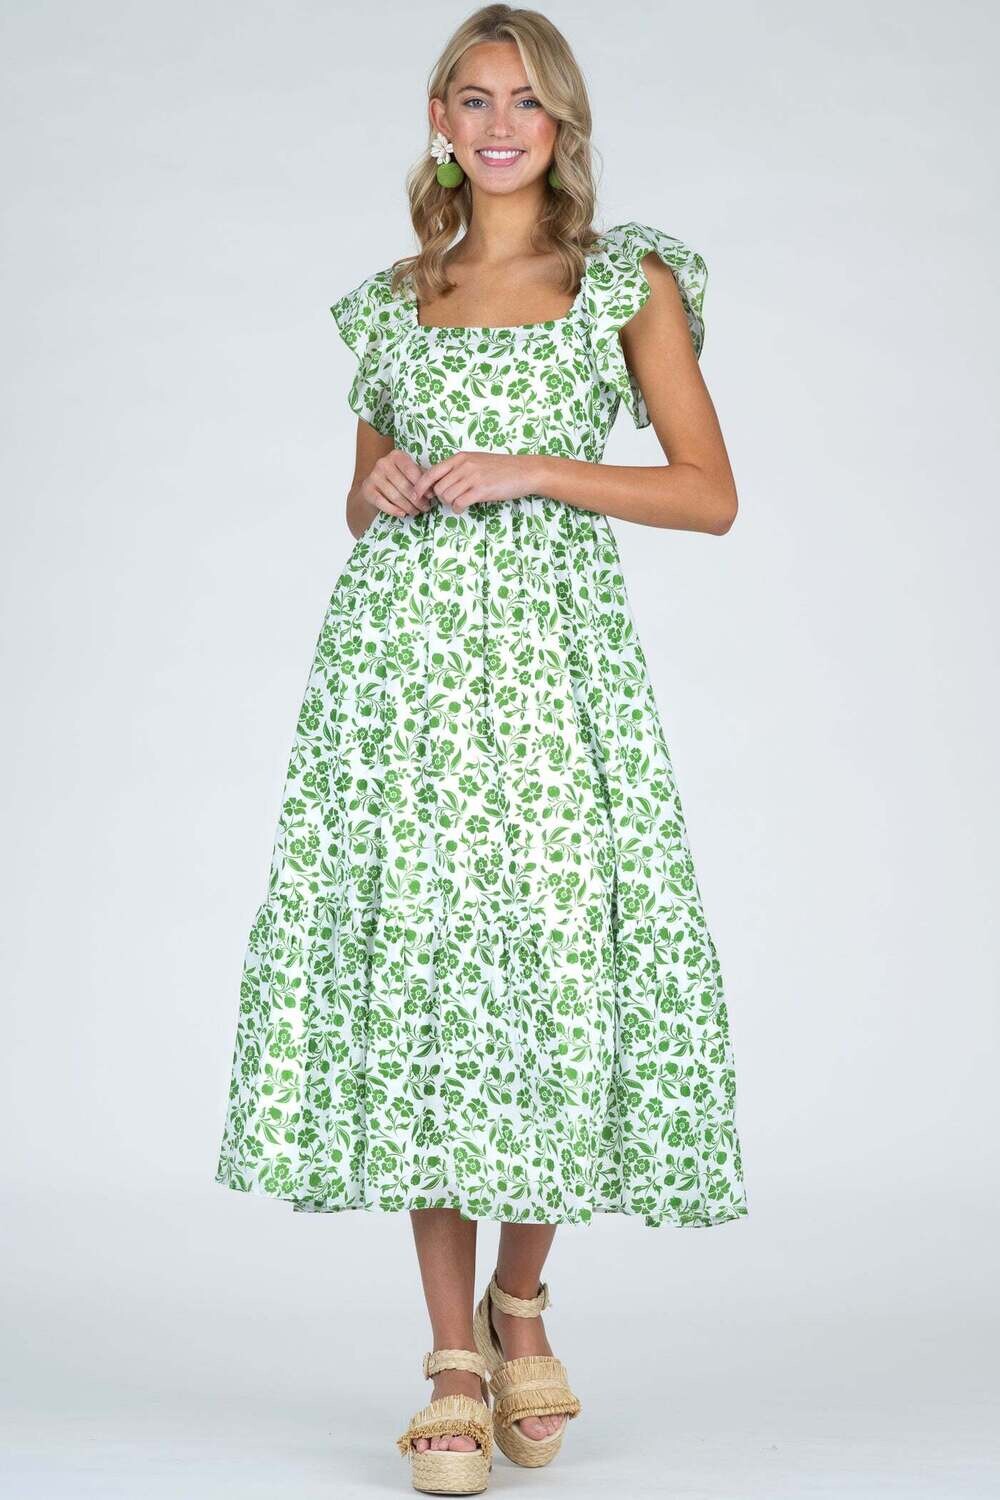 OLIVIA JAMES Brooke Dress in Picnic Floral Lime